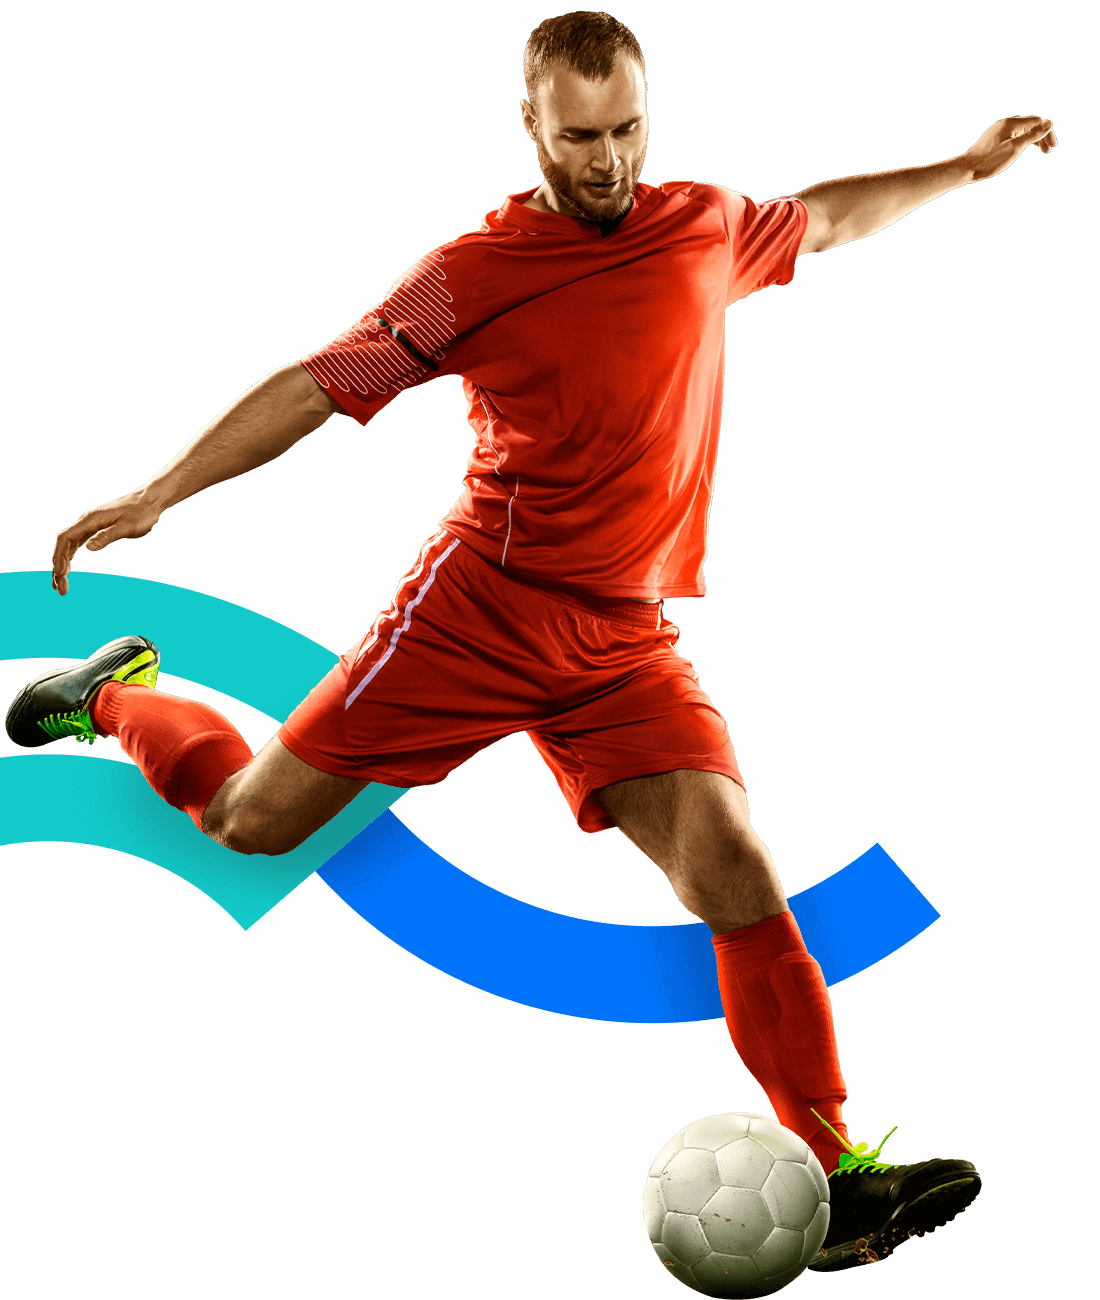 En la foto, un futbolista patea un balón. Extiende sus brazos y piernas. Viste un uniforme rojo. 